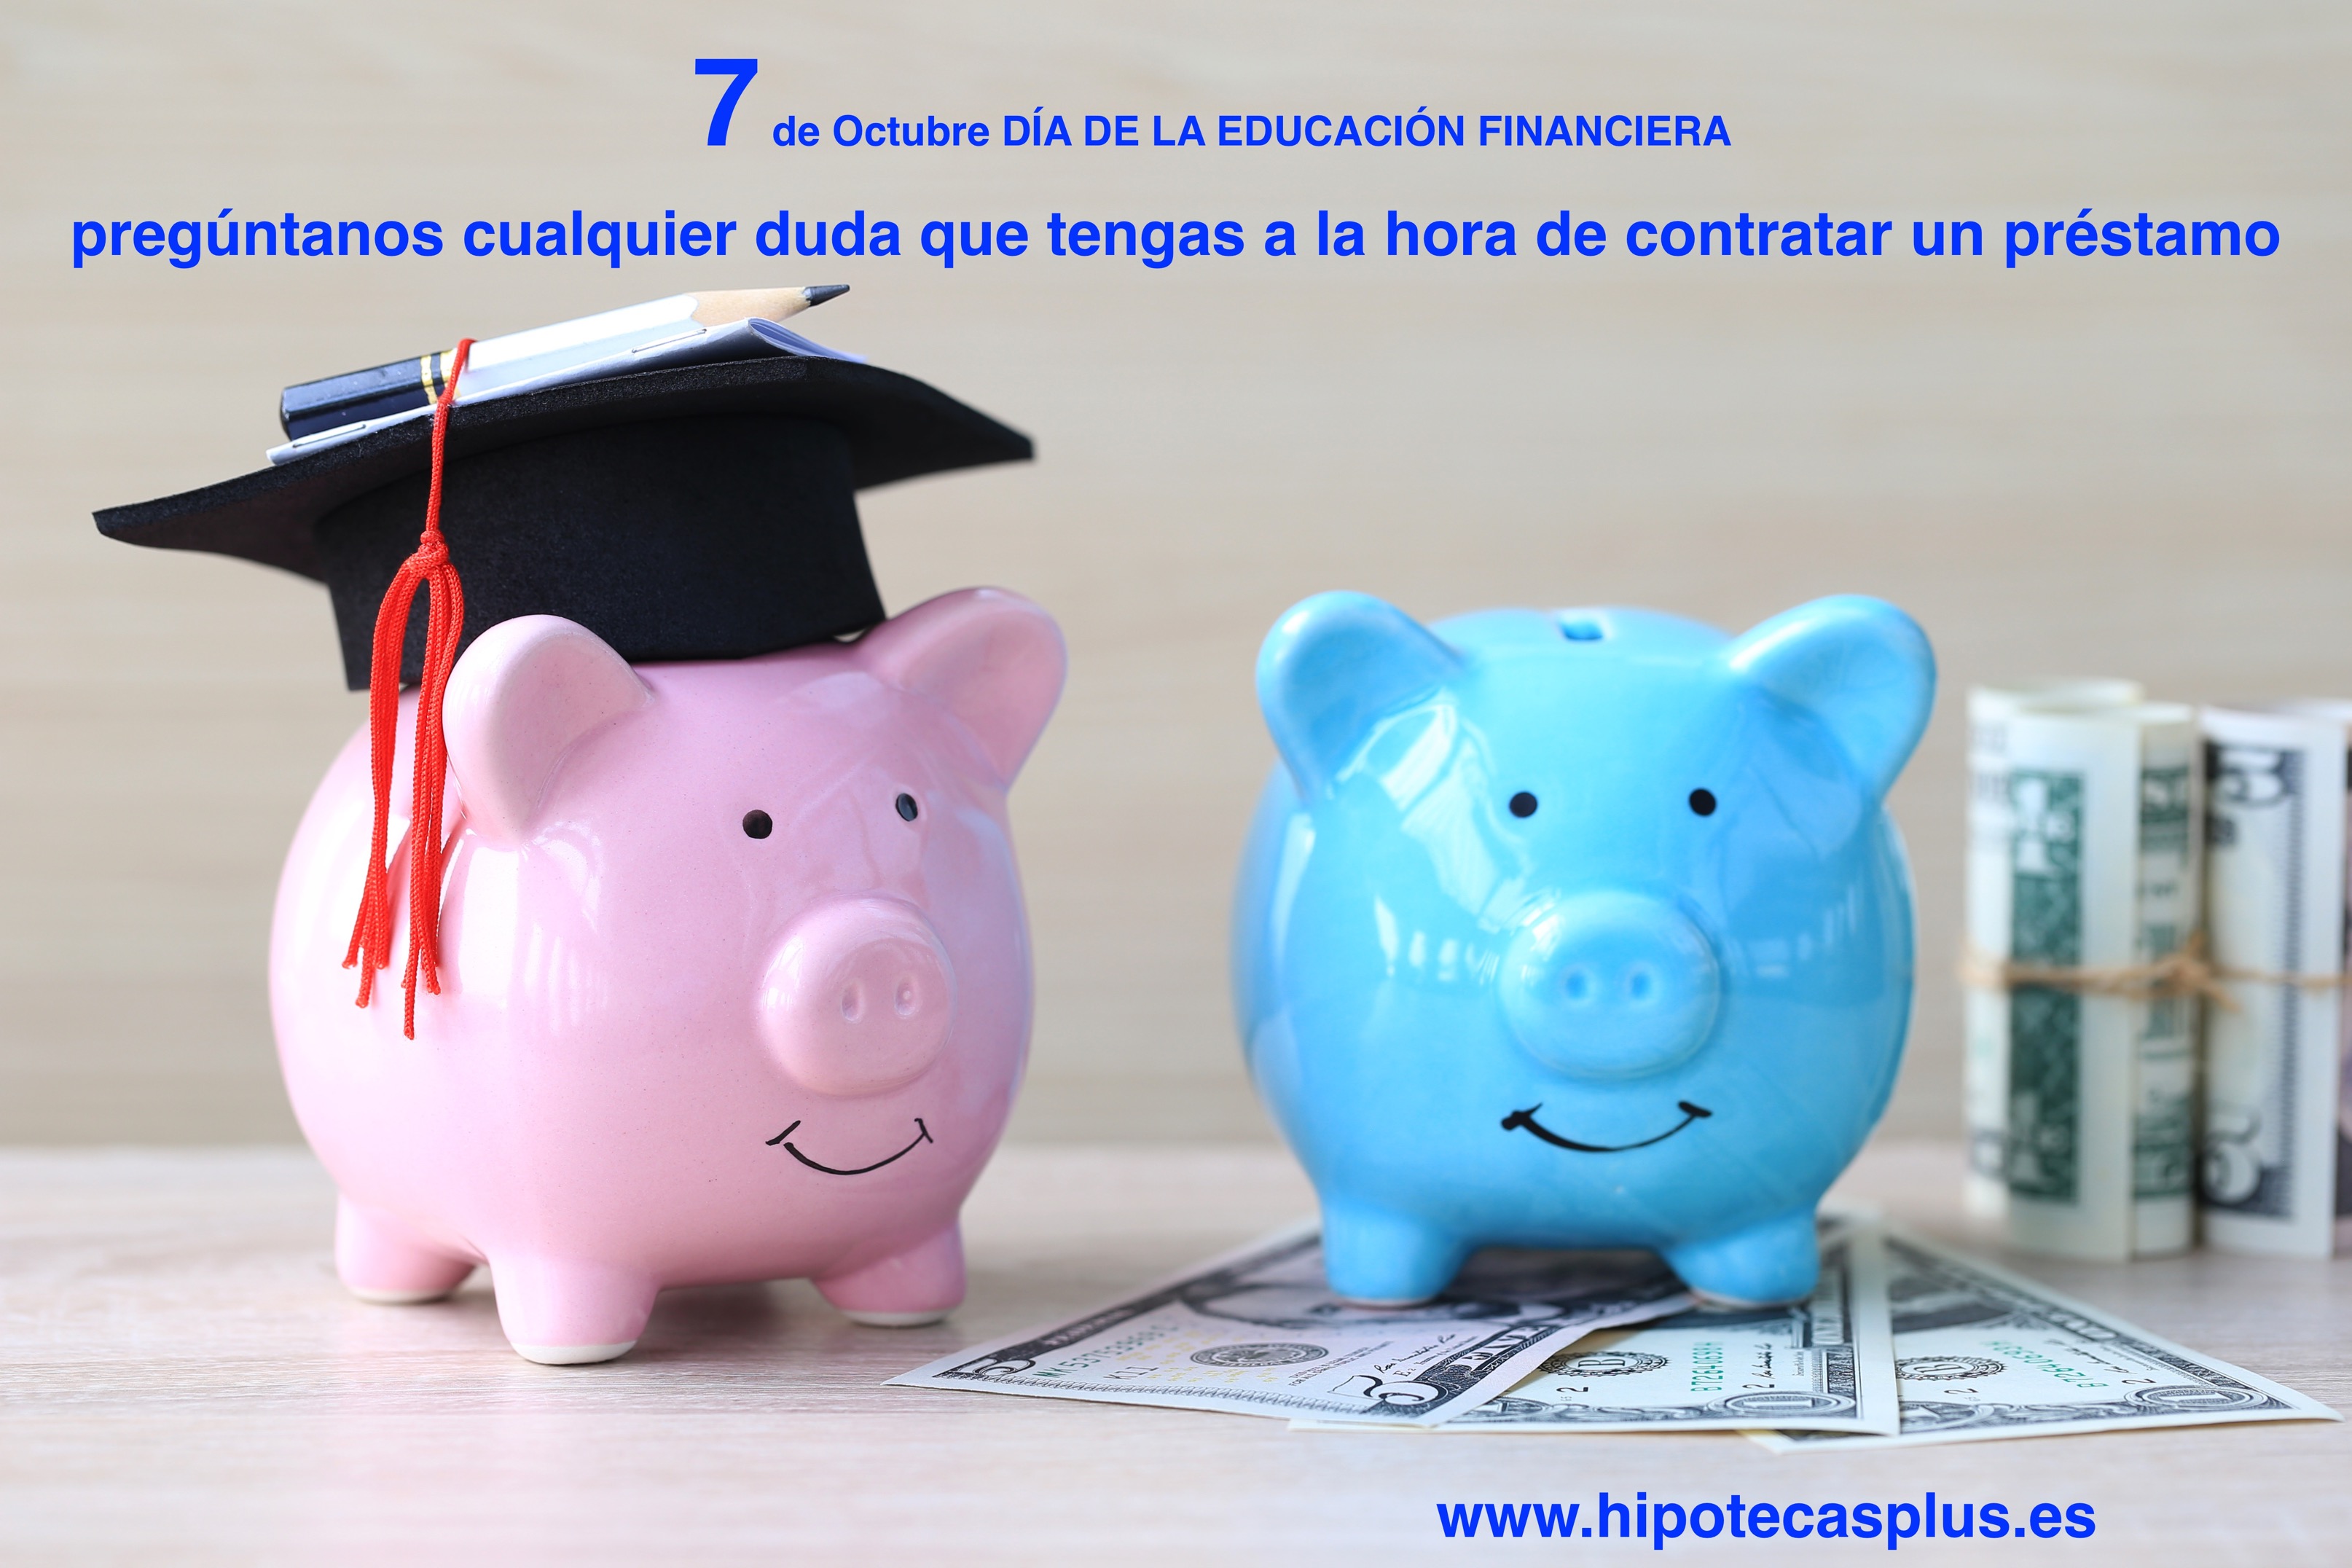 https://www.hipotecasplus.es/wp-content/uploads/Día-de-la-educación-financiera-2-250x250.jpg